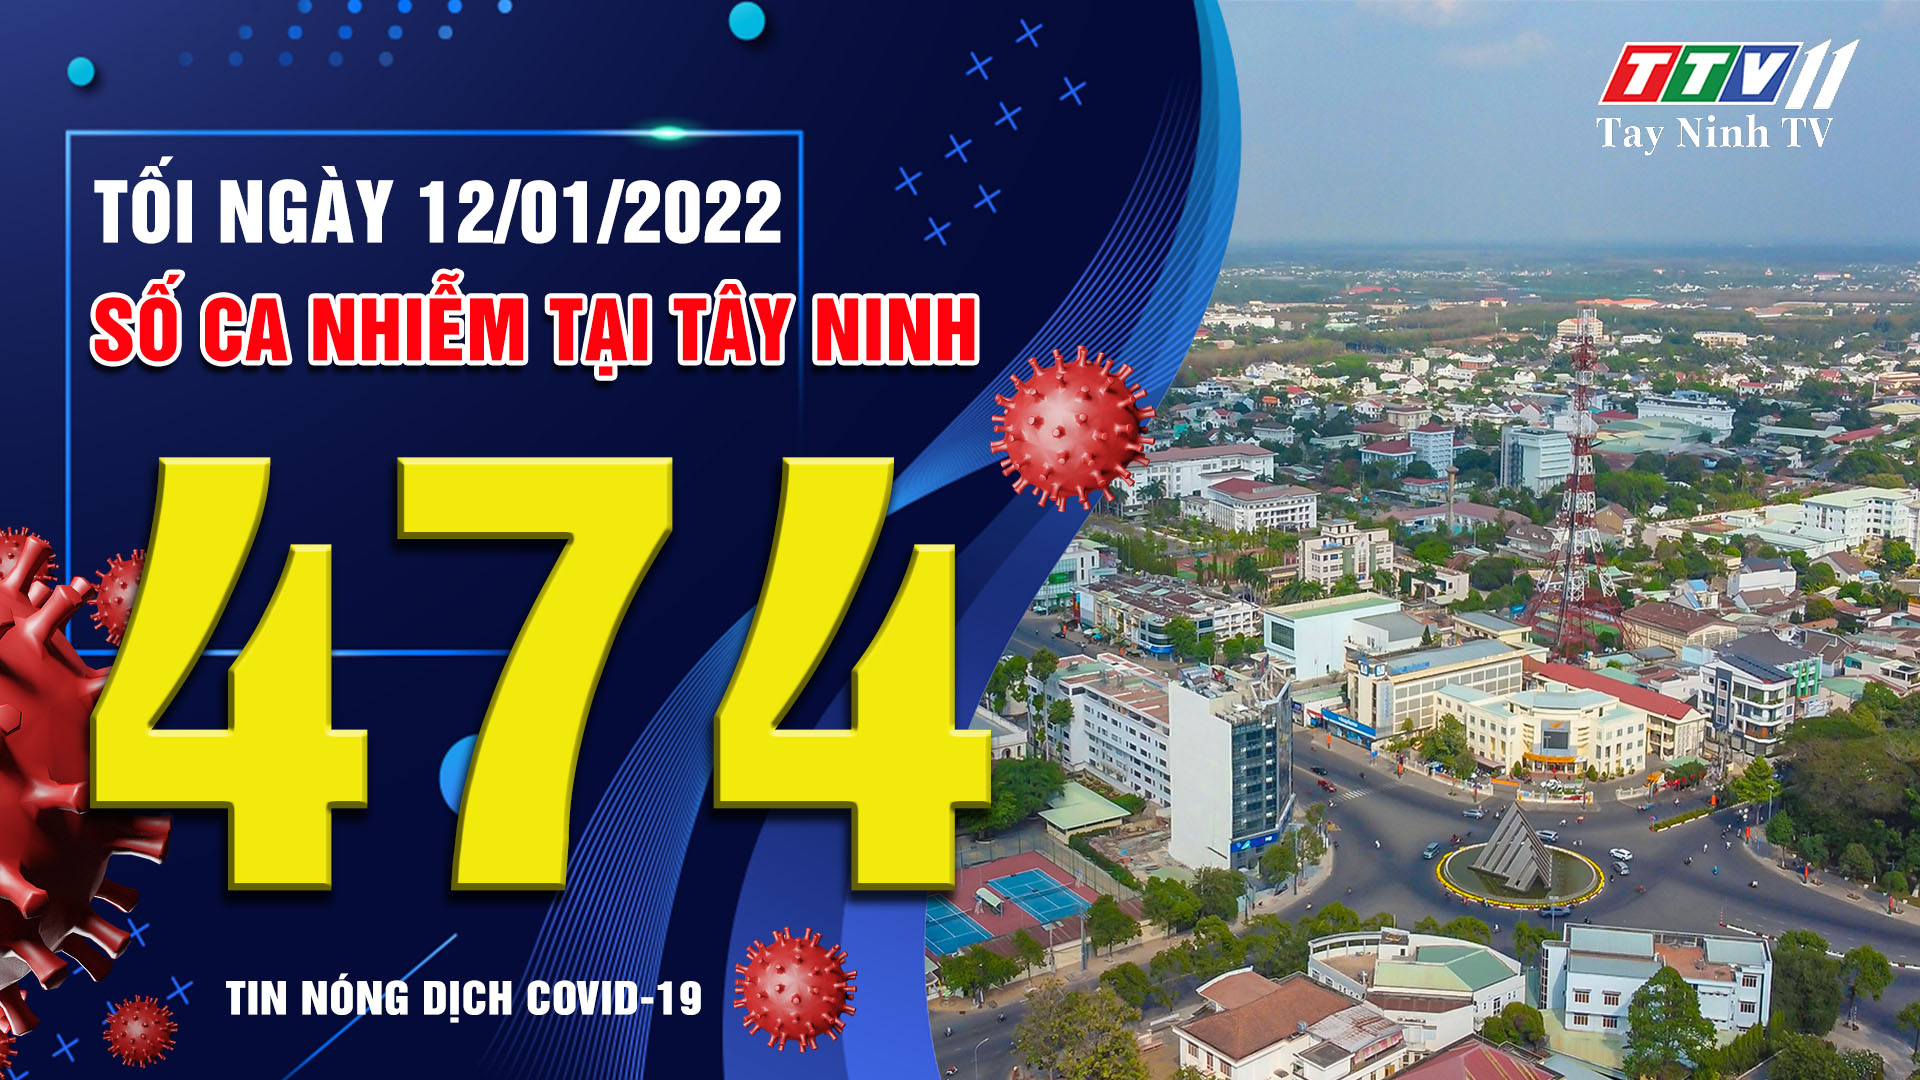 TIN TỨC COVID-19 TỐI 12/01/2022 | Tin tức hôm nay | TayNinhTV